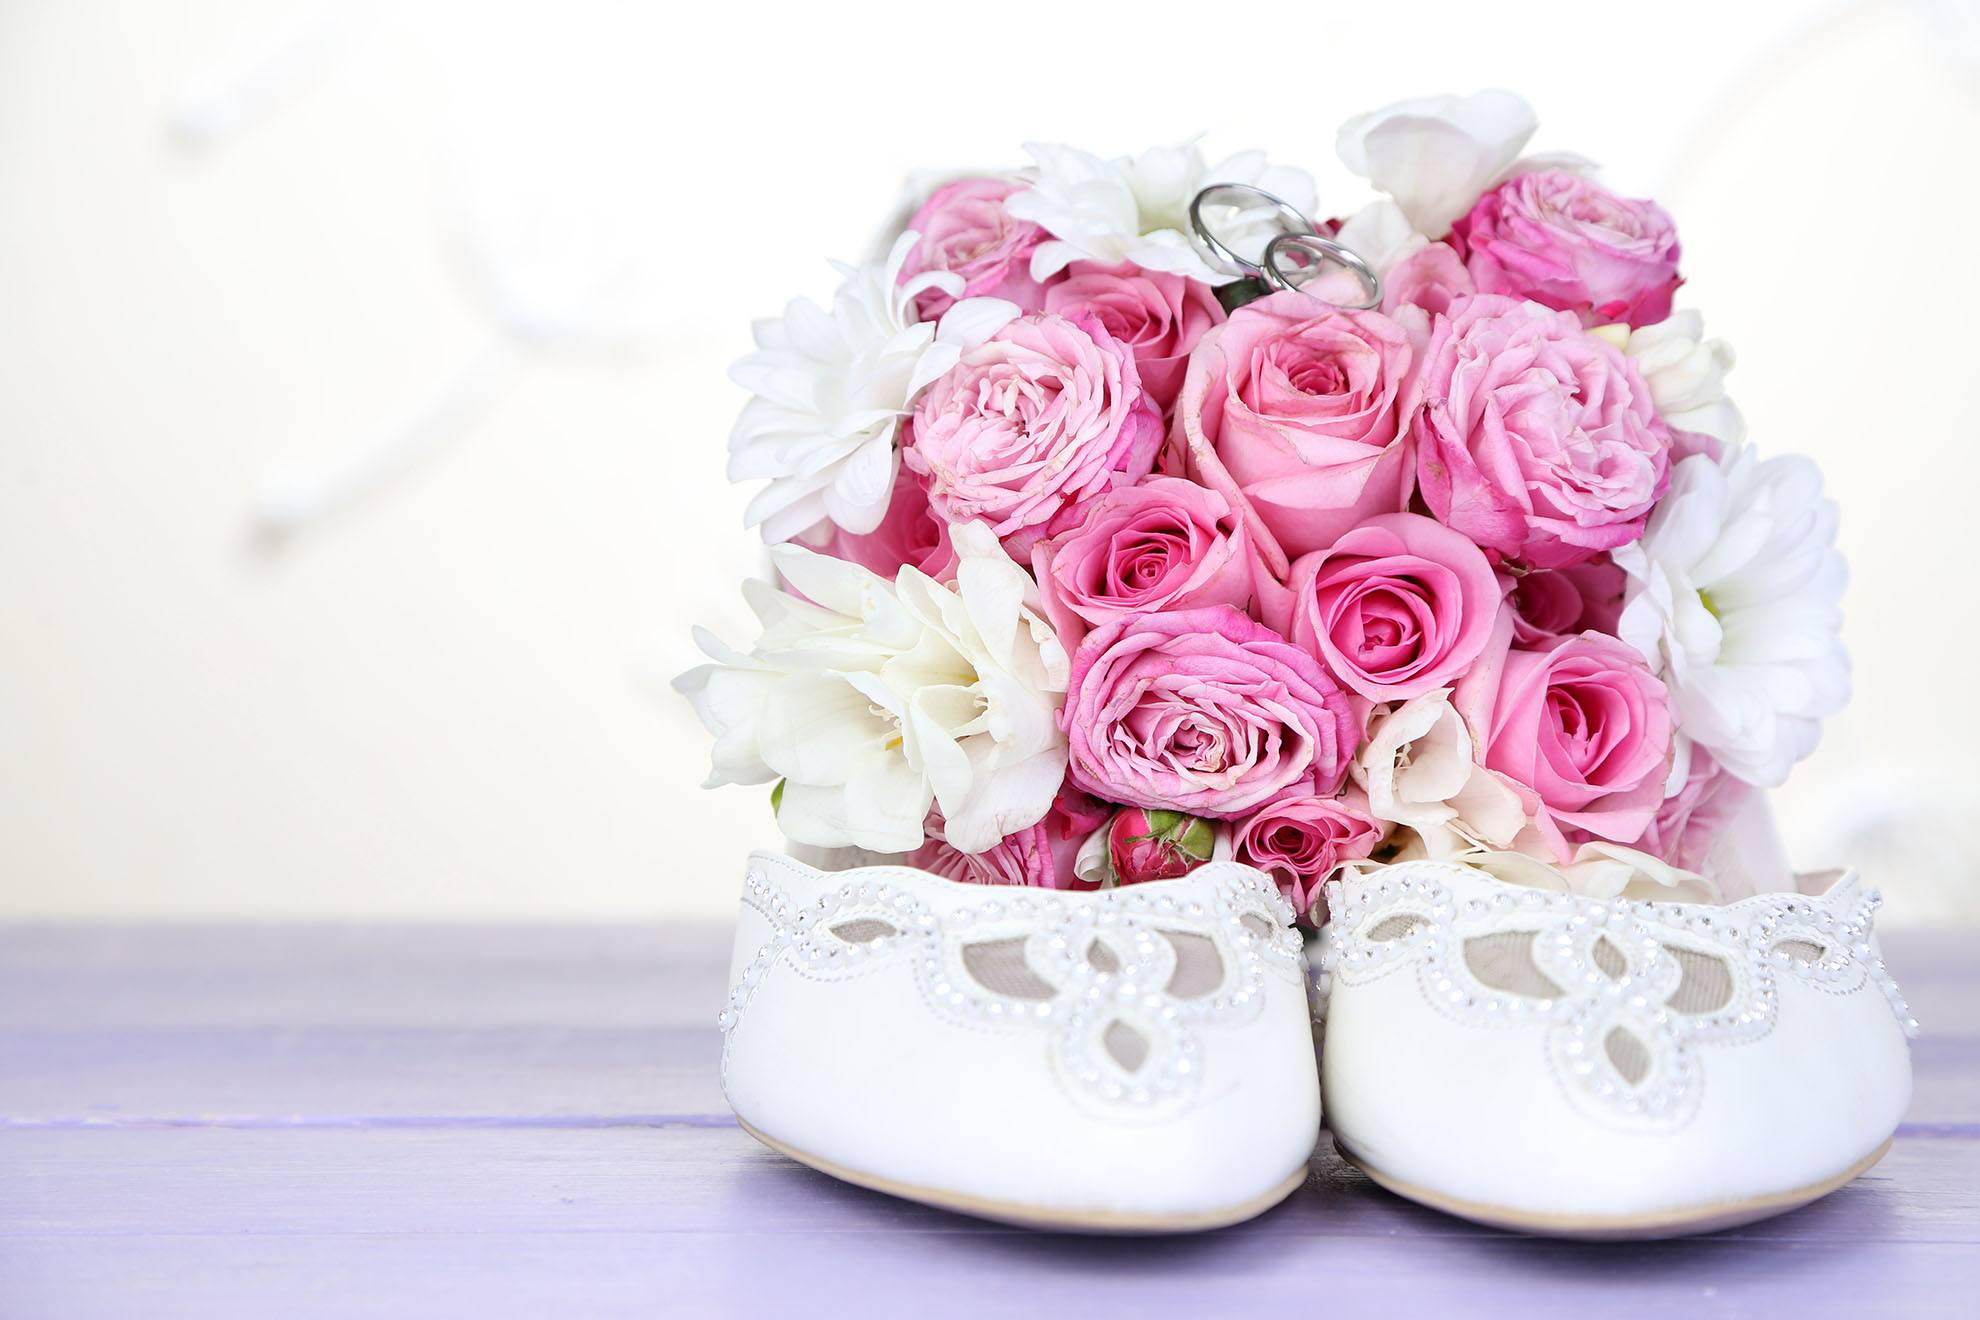 Svatební střevíce se svatební kyticí z růží